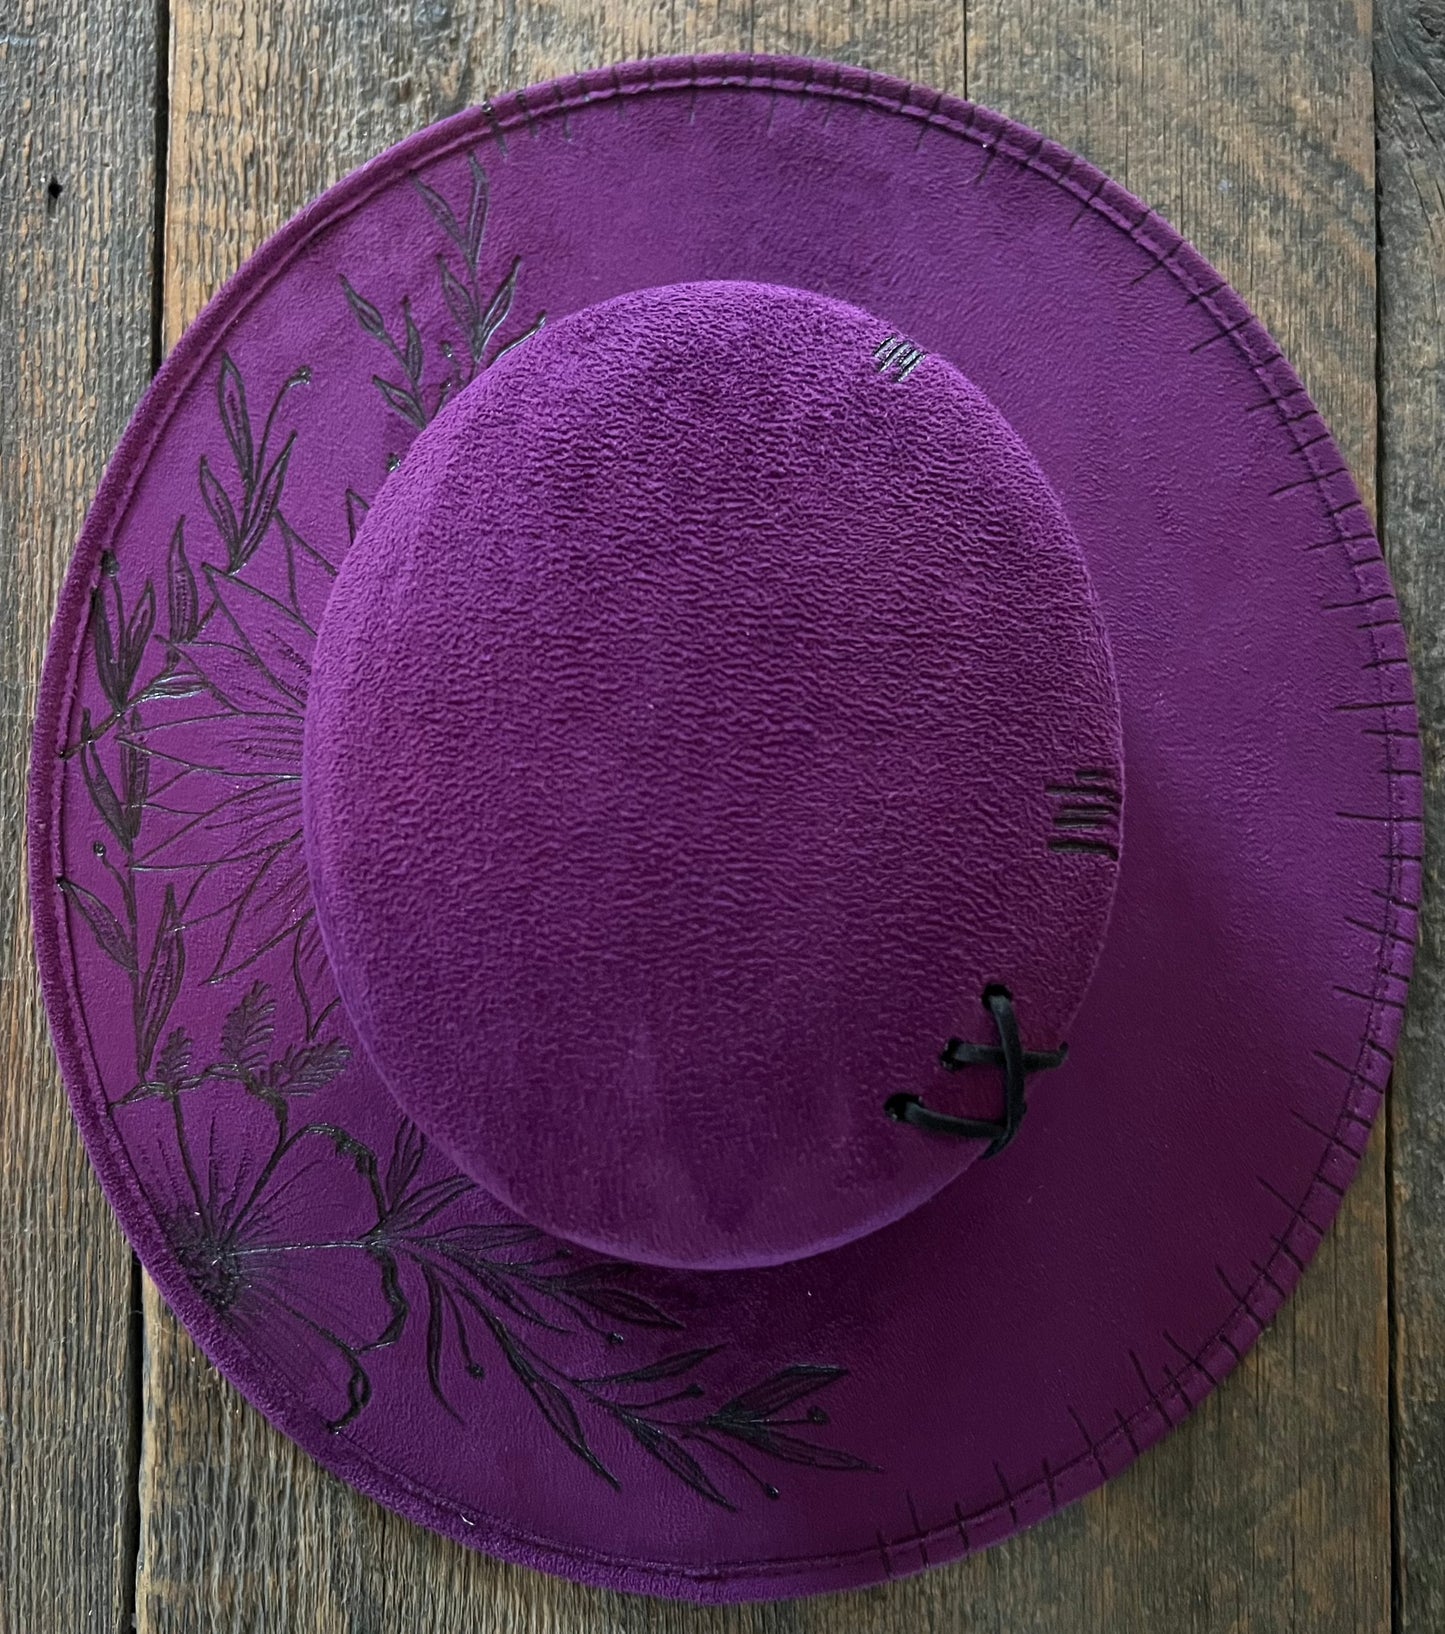 #153 - Flowers on Deep Purple Rancher Hat